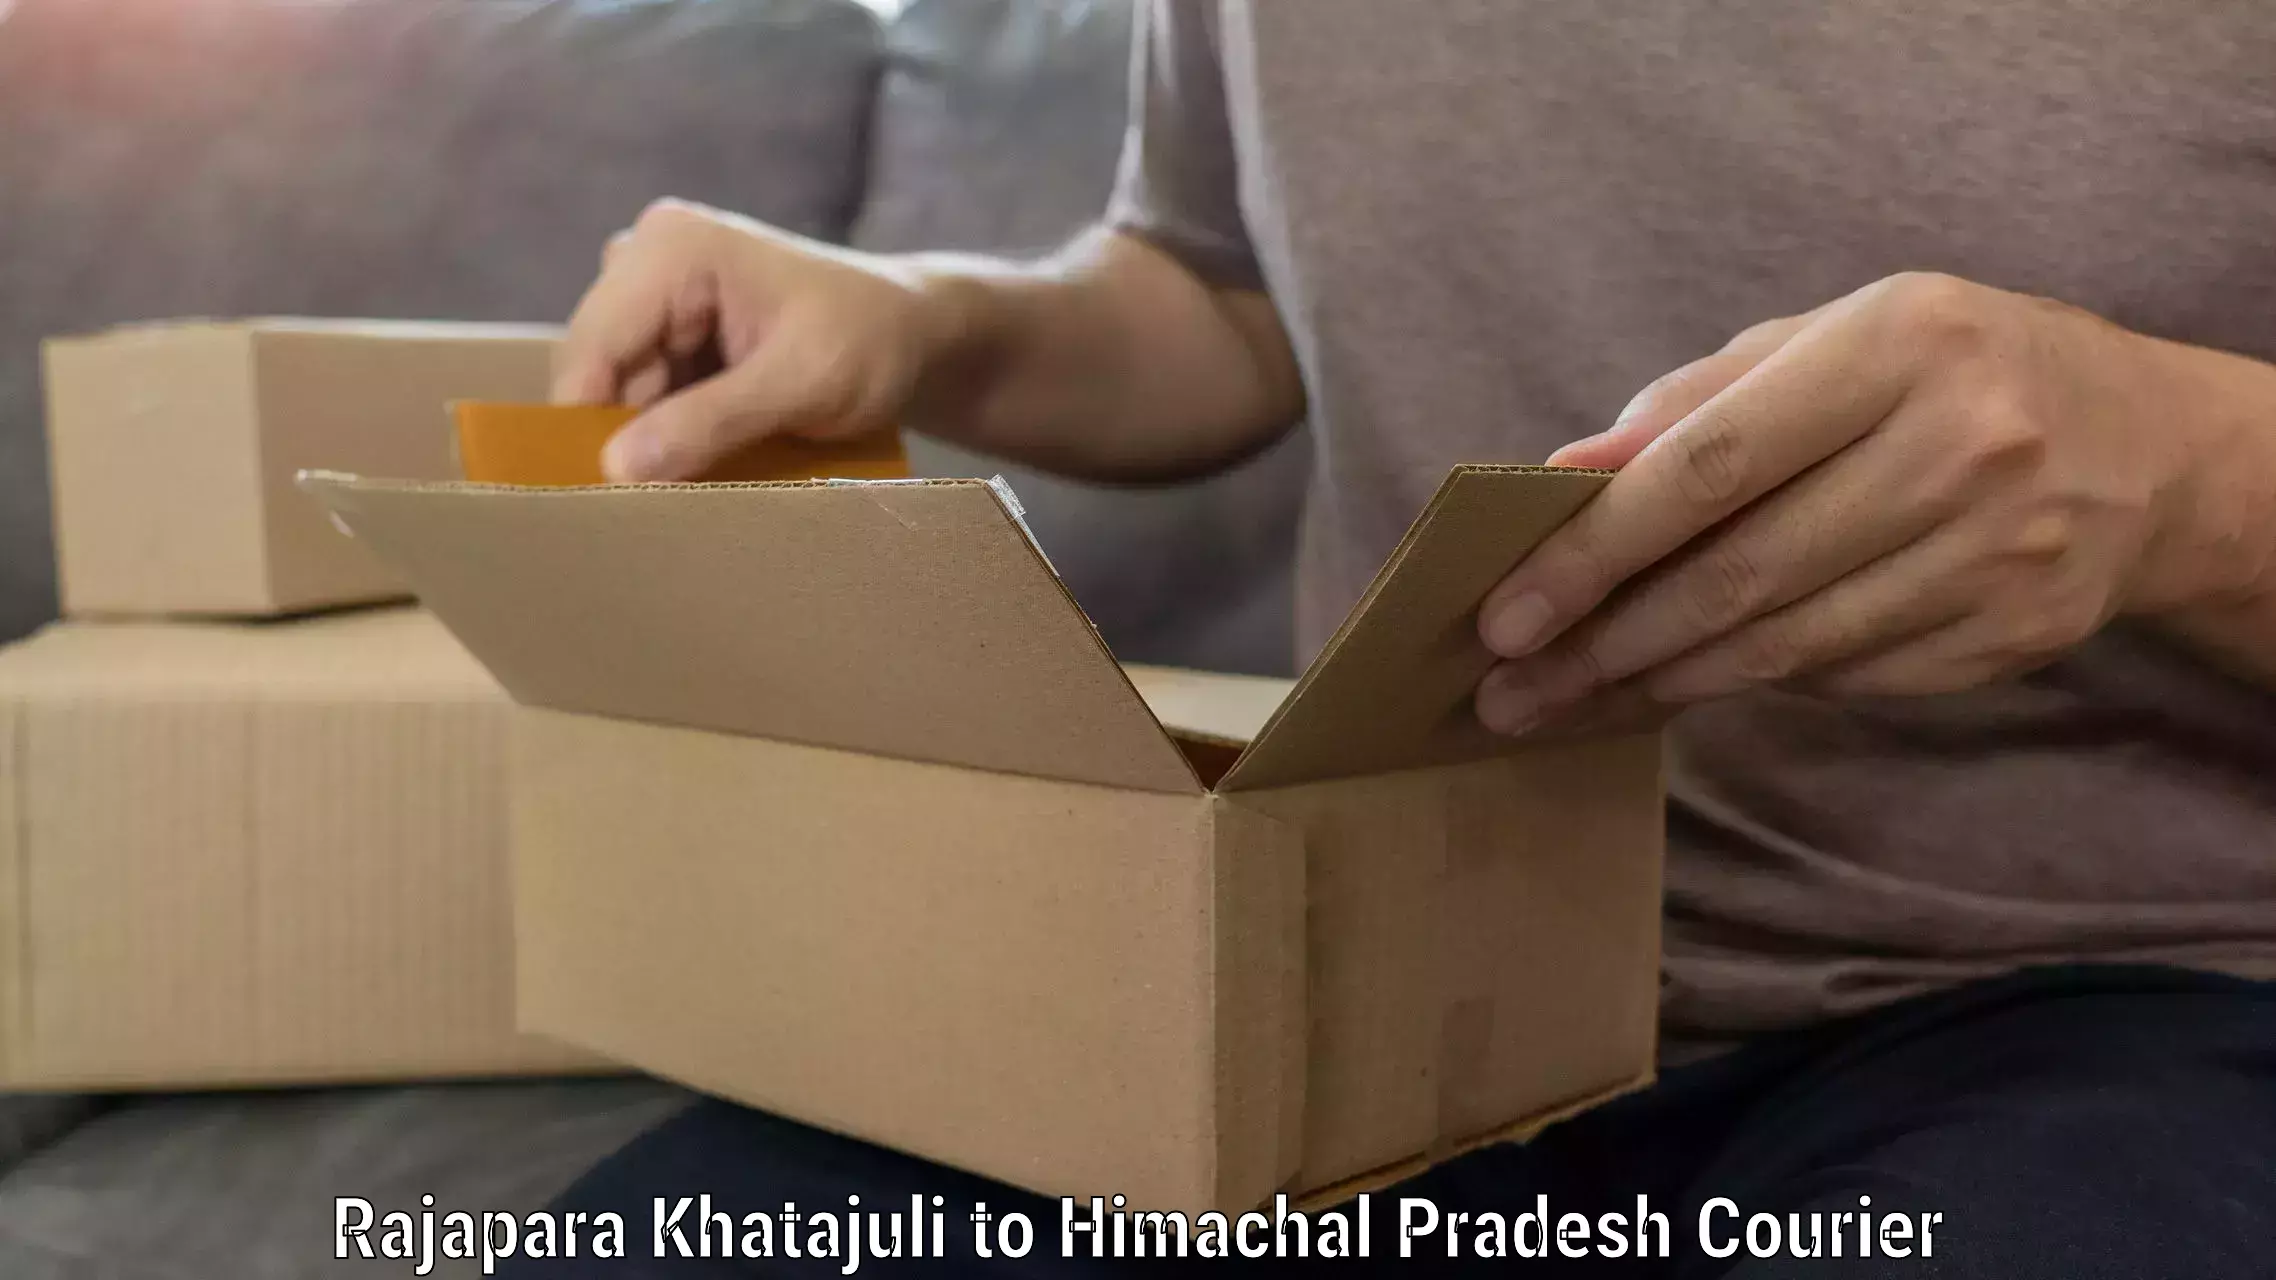 Professional packing services Rajapara Khatajuli to Dheera